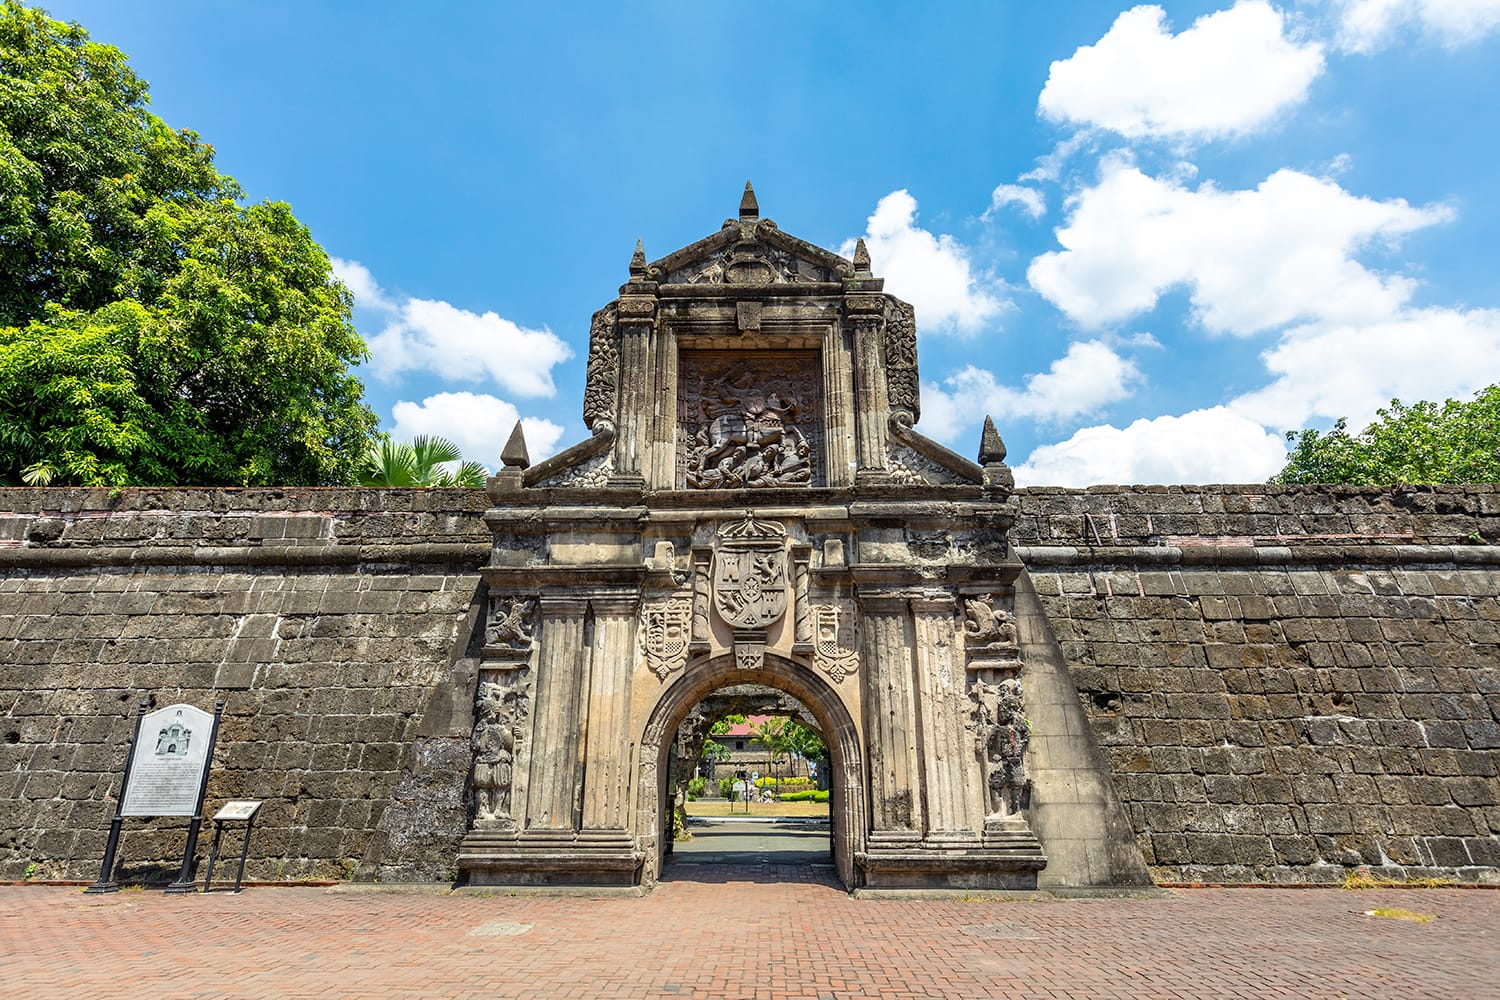 Main gate of Fort Santiago in Manila, Philippines